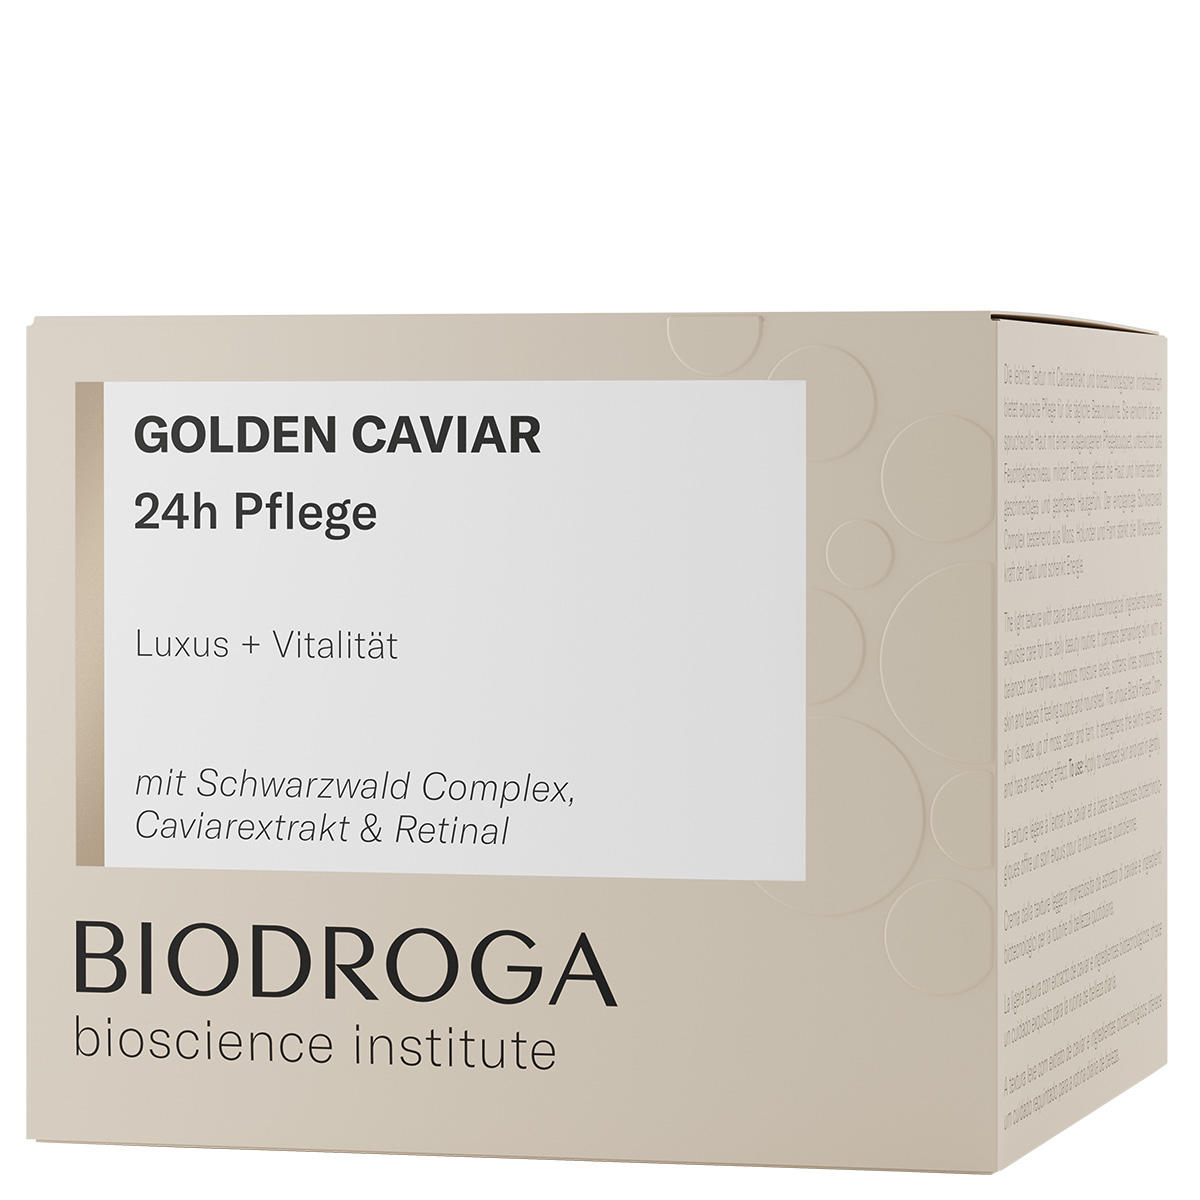 BIODROGA Bioscience Institute GOLDEN CAVIAR 24h care 50 ml - 2